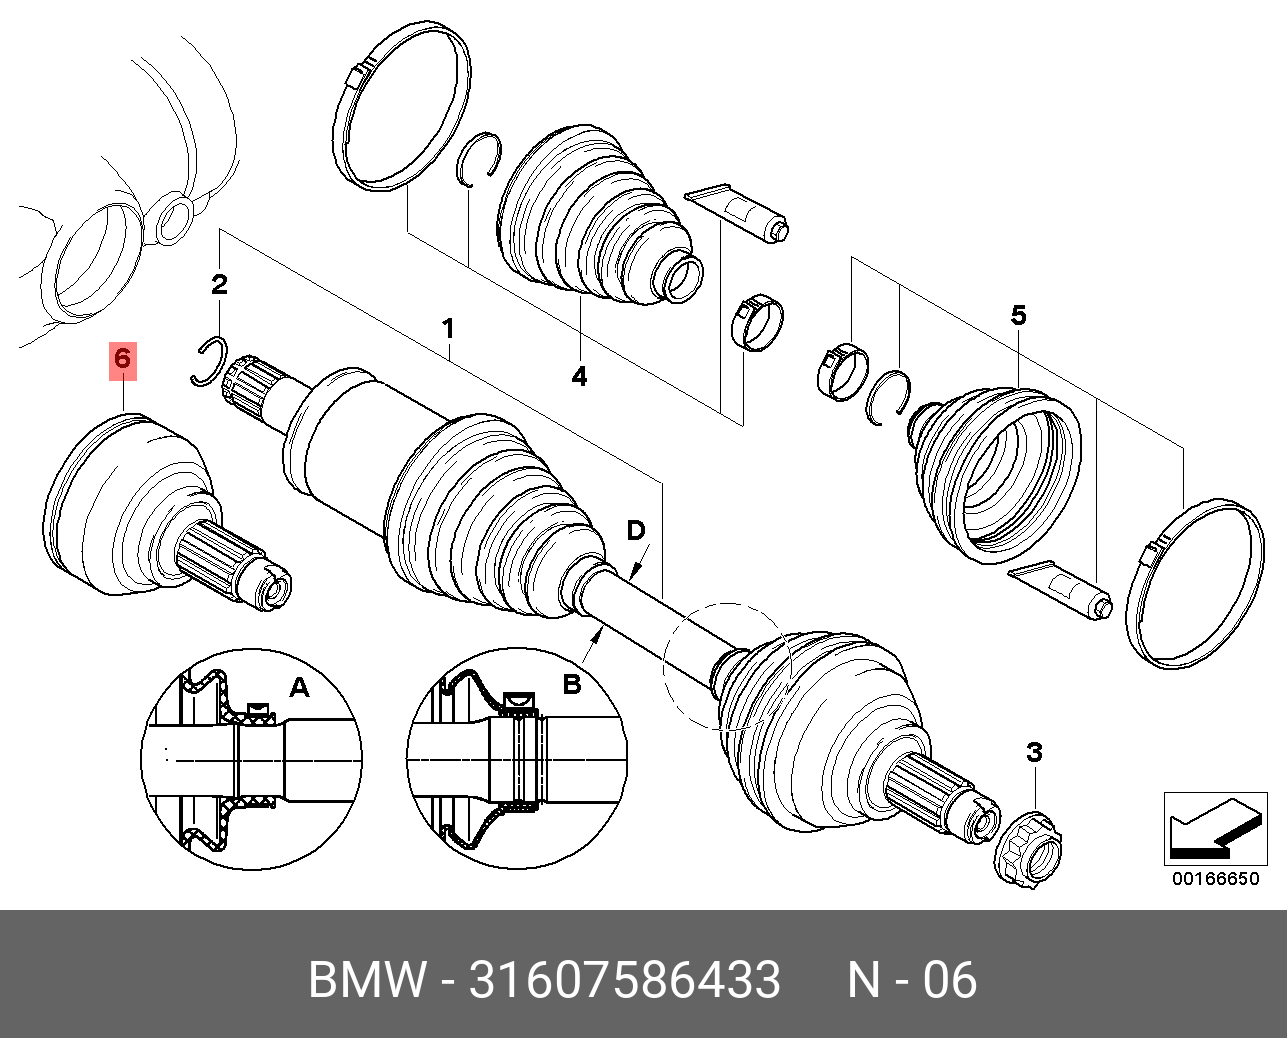 Привода бмв х5 е53. Привод передний БМВ х5 е70. BMW x5 e70 передний привод. Привод передний BMW x3 e83. Передний левый привод BMW x5 e53.